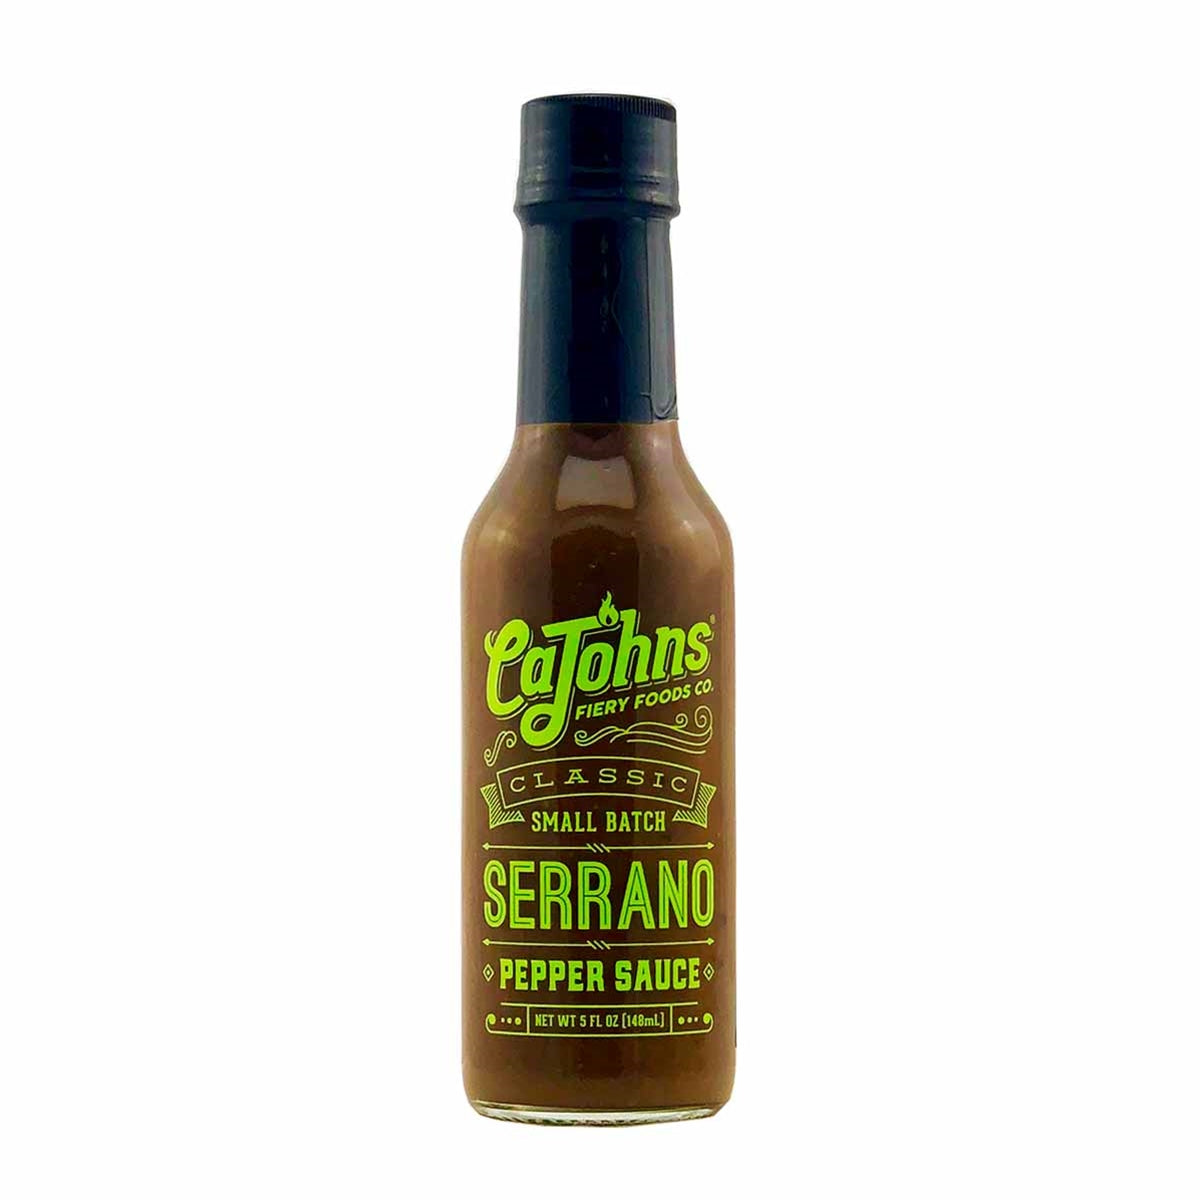 CaJohns Classic Serrano Pepper Sauce